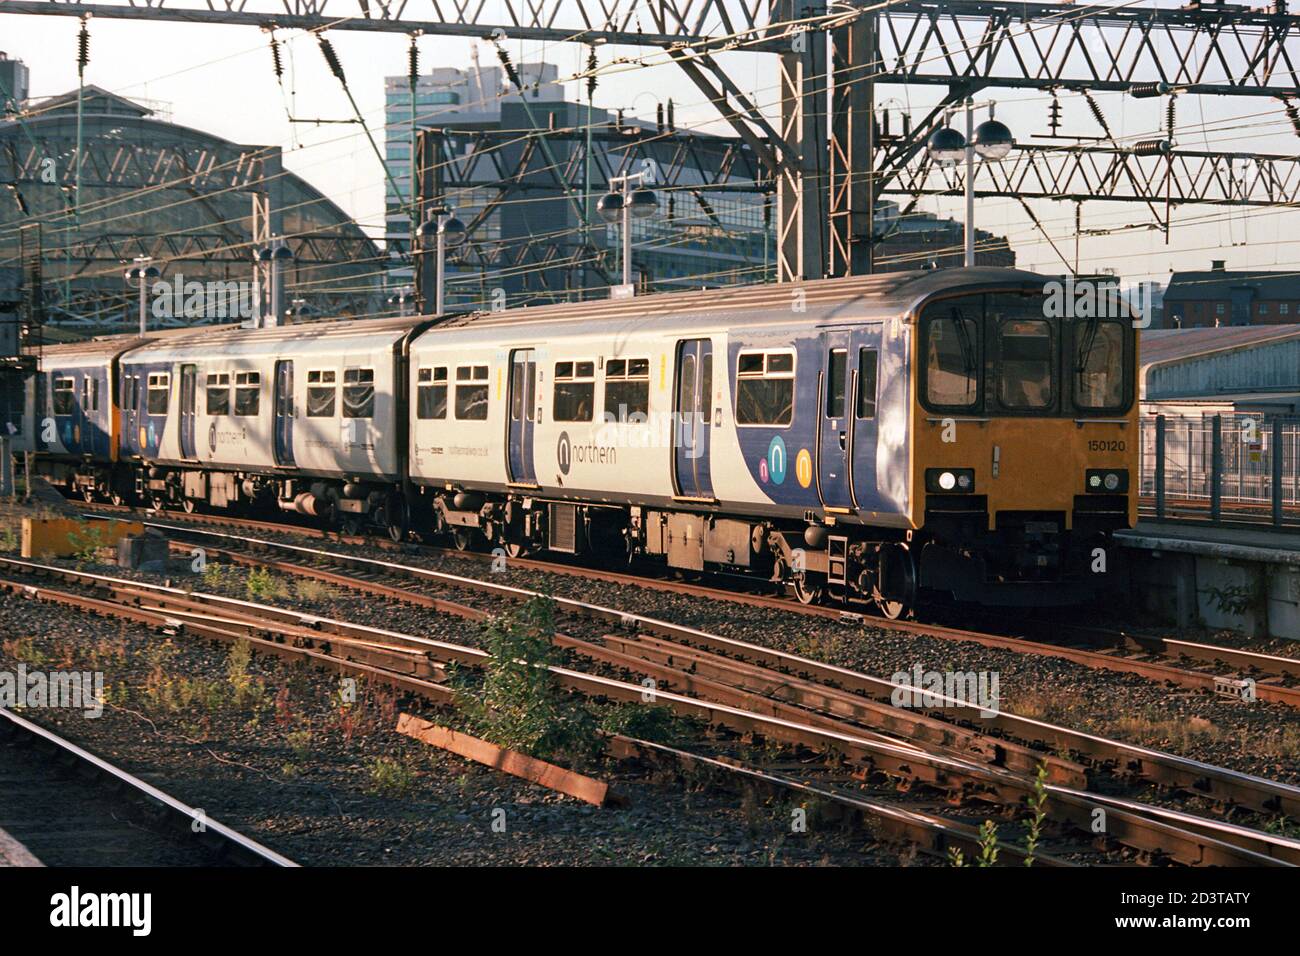 Manchester, Großbritannien - 19. September 2020: Ein Nordzug (Klasse 150) am Bahnhof Manchester Piccadilly für den Nahverkehr. Stockfoto